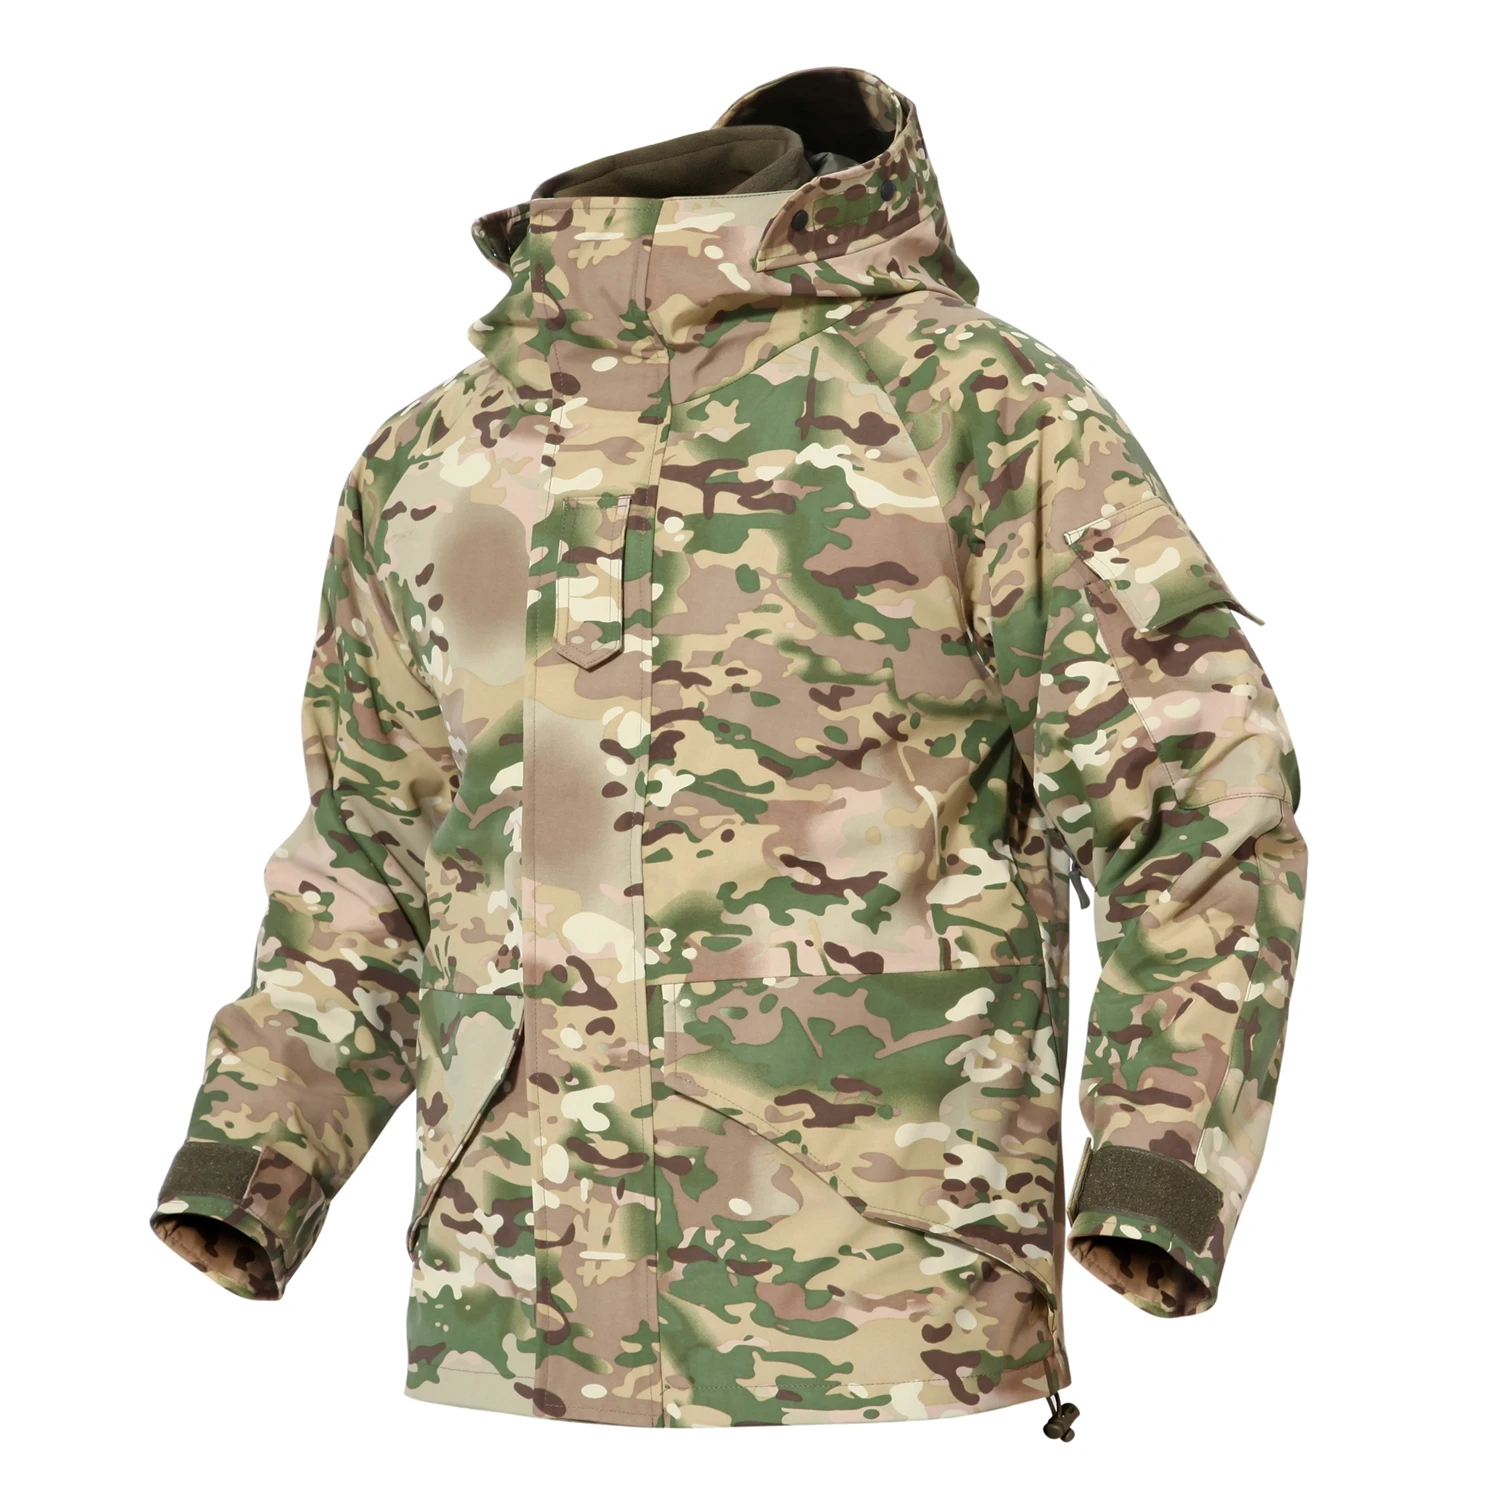 SJ-MAURIE, 2 шт., Мужская походная куртка, одежда для охоты, военная тактическая куртка, 2 в 1, ветровка, водонепроницаемая флисовая куртка - Цвет: 09